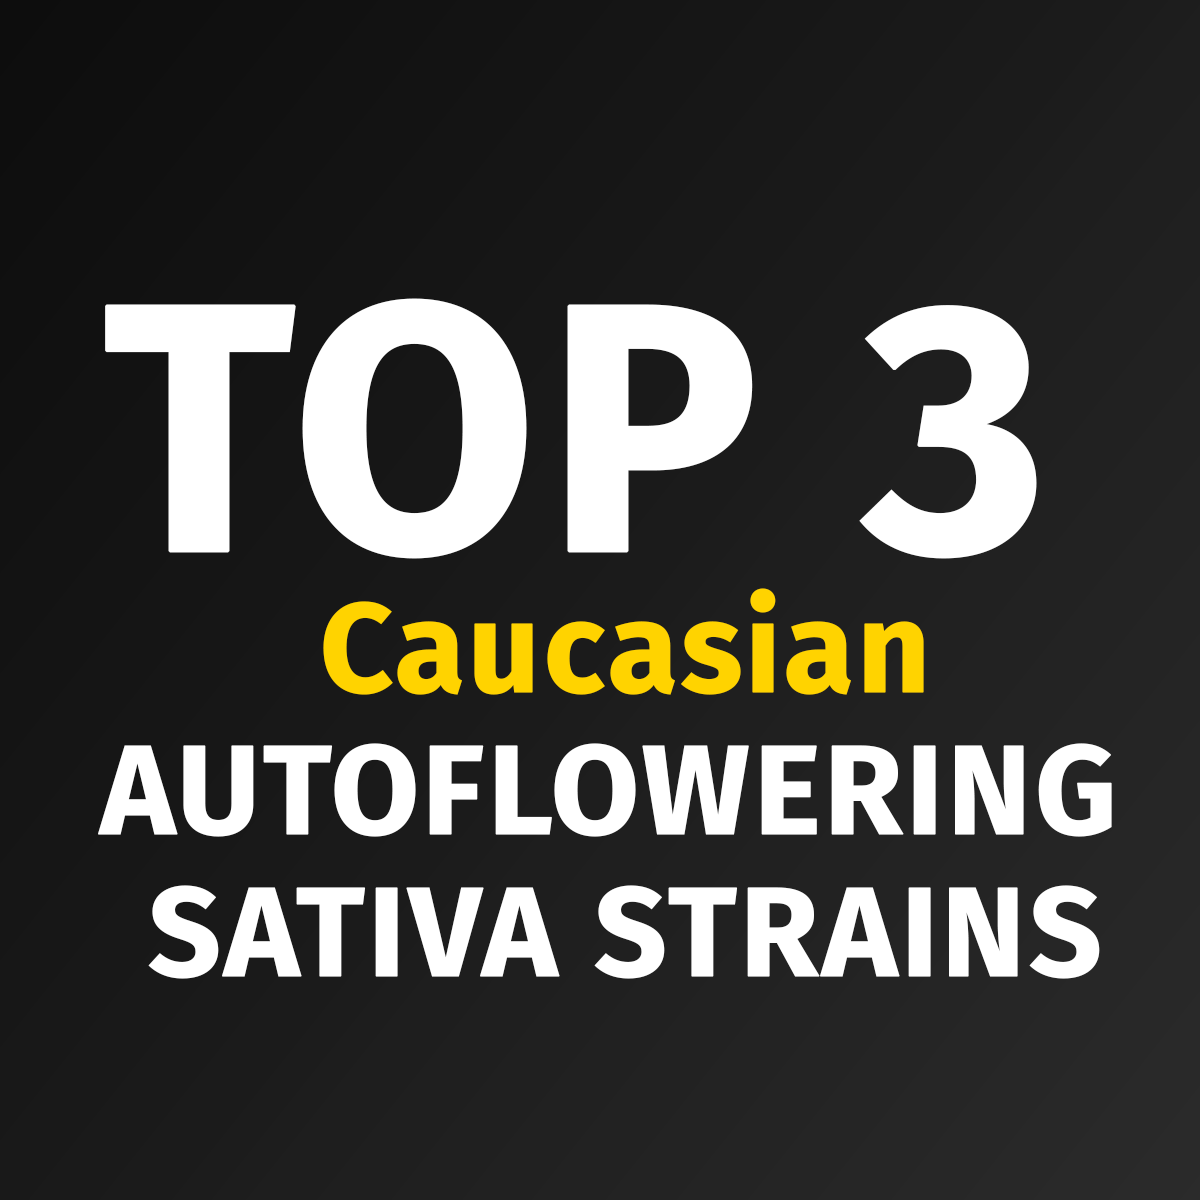 TOP 3 Caucasian Auto Sativa Strains